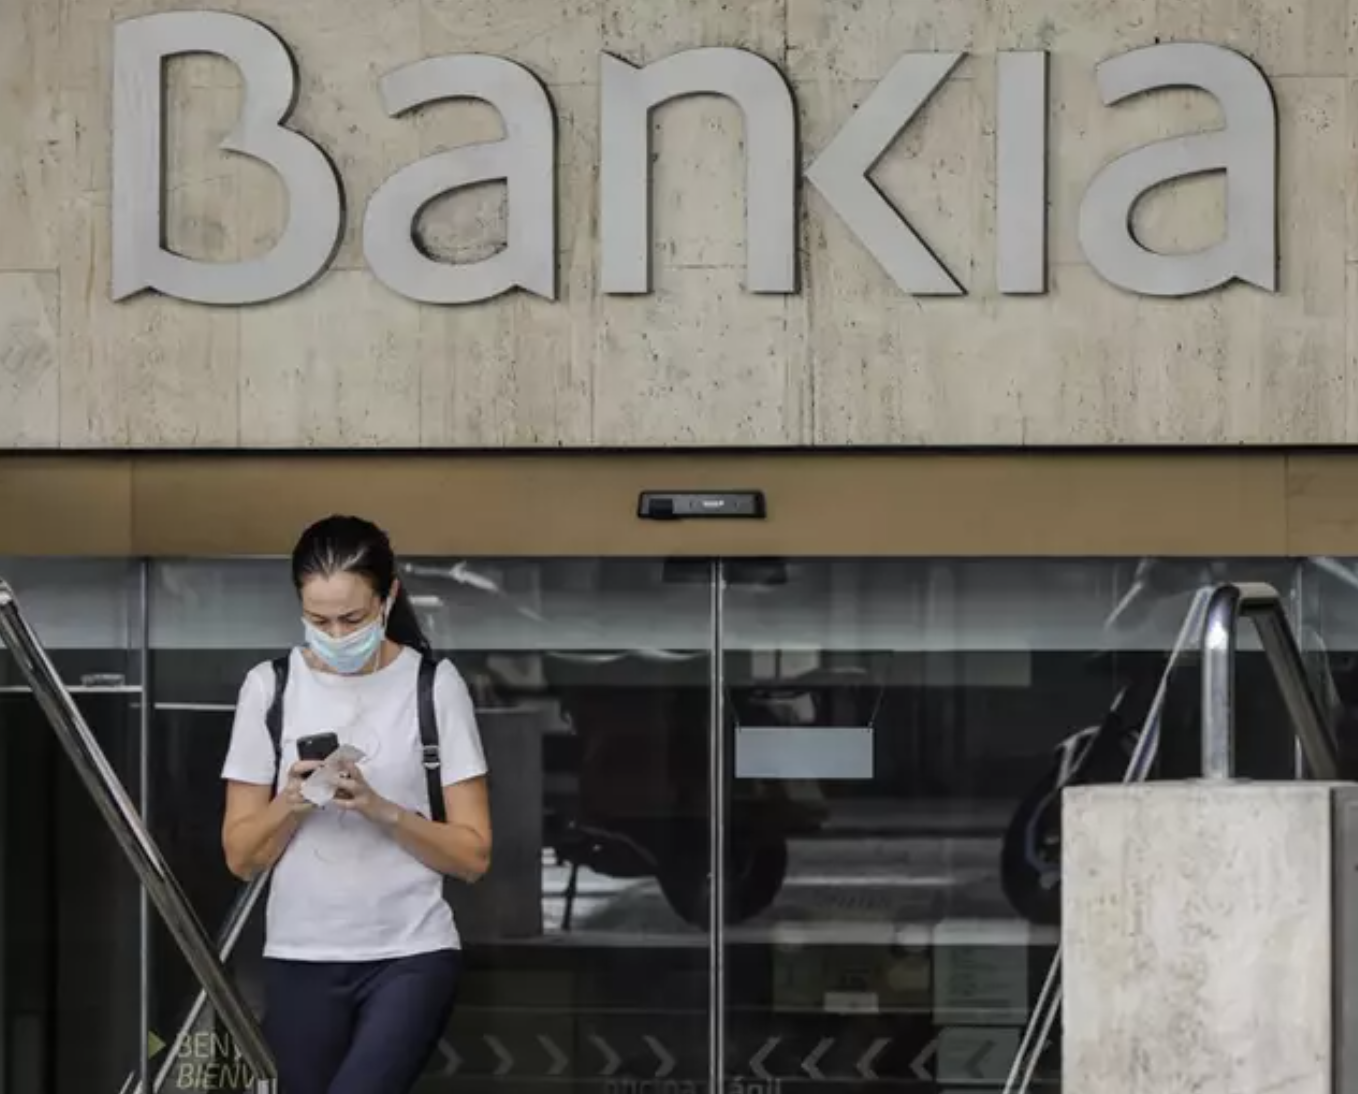 Bankia abonará aportaciones y traspasos a sus planes de pensiones con cheques de Amazon